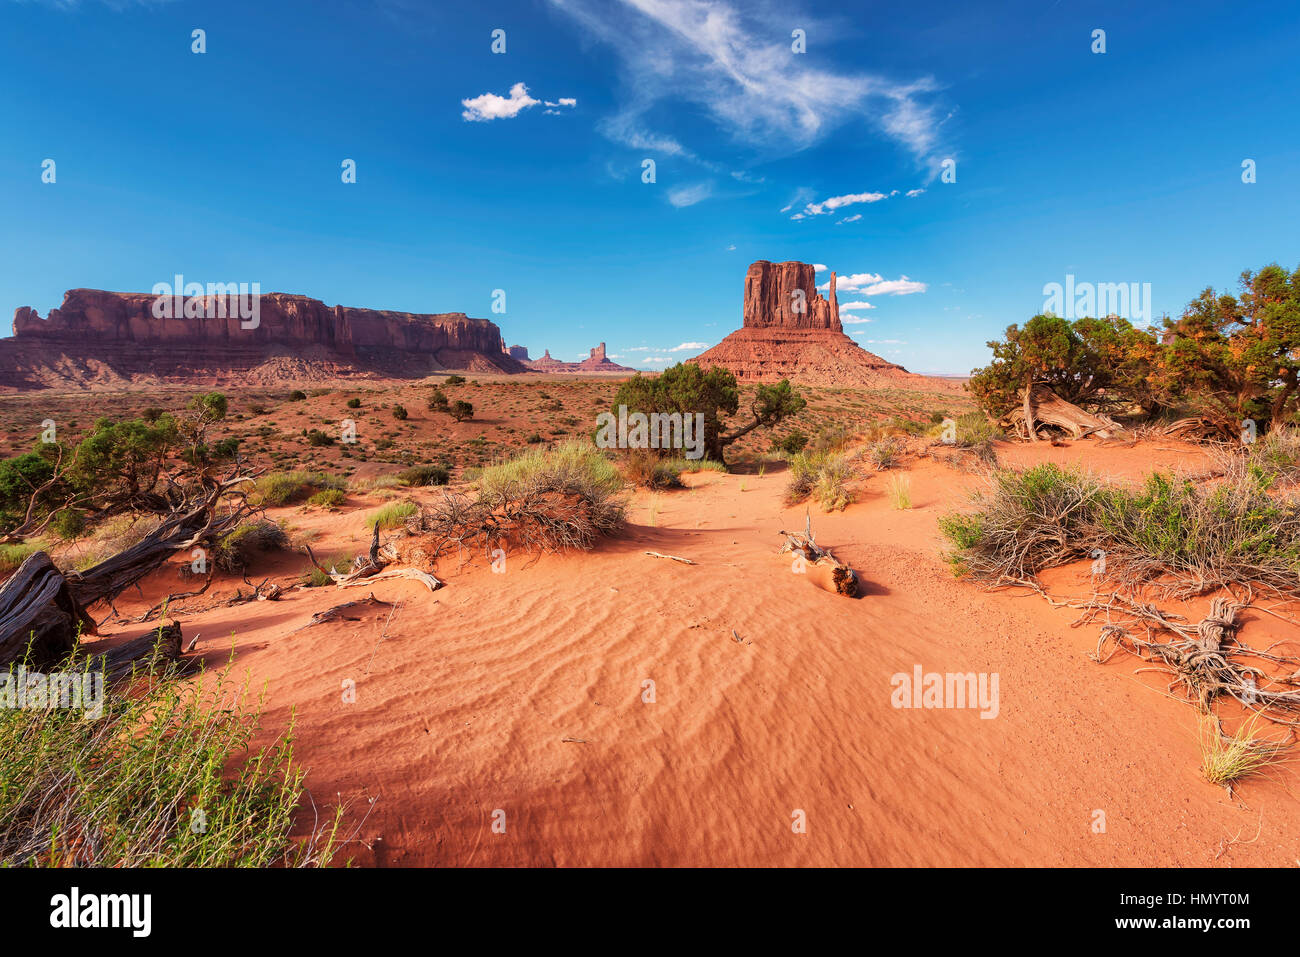 Monument Valley, Arizona. Stock Photo